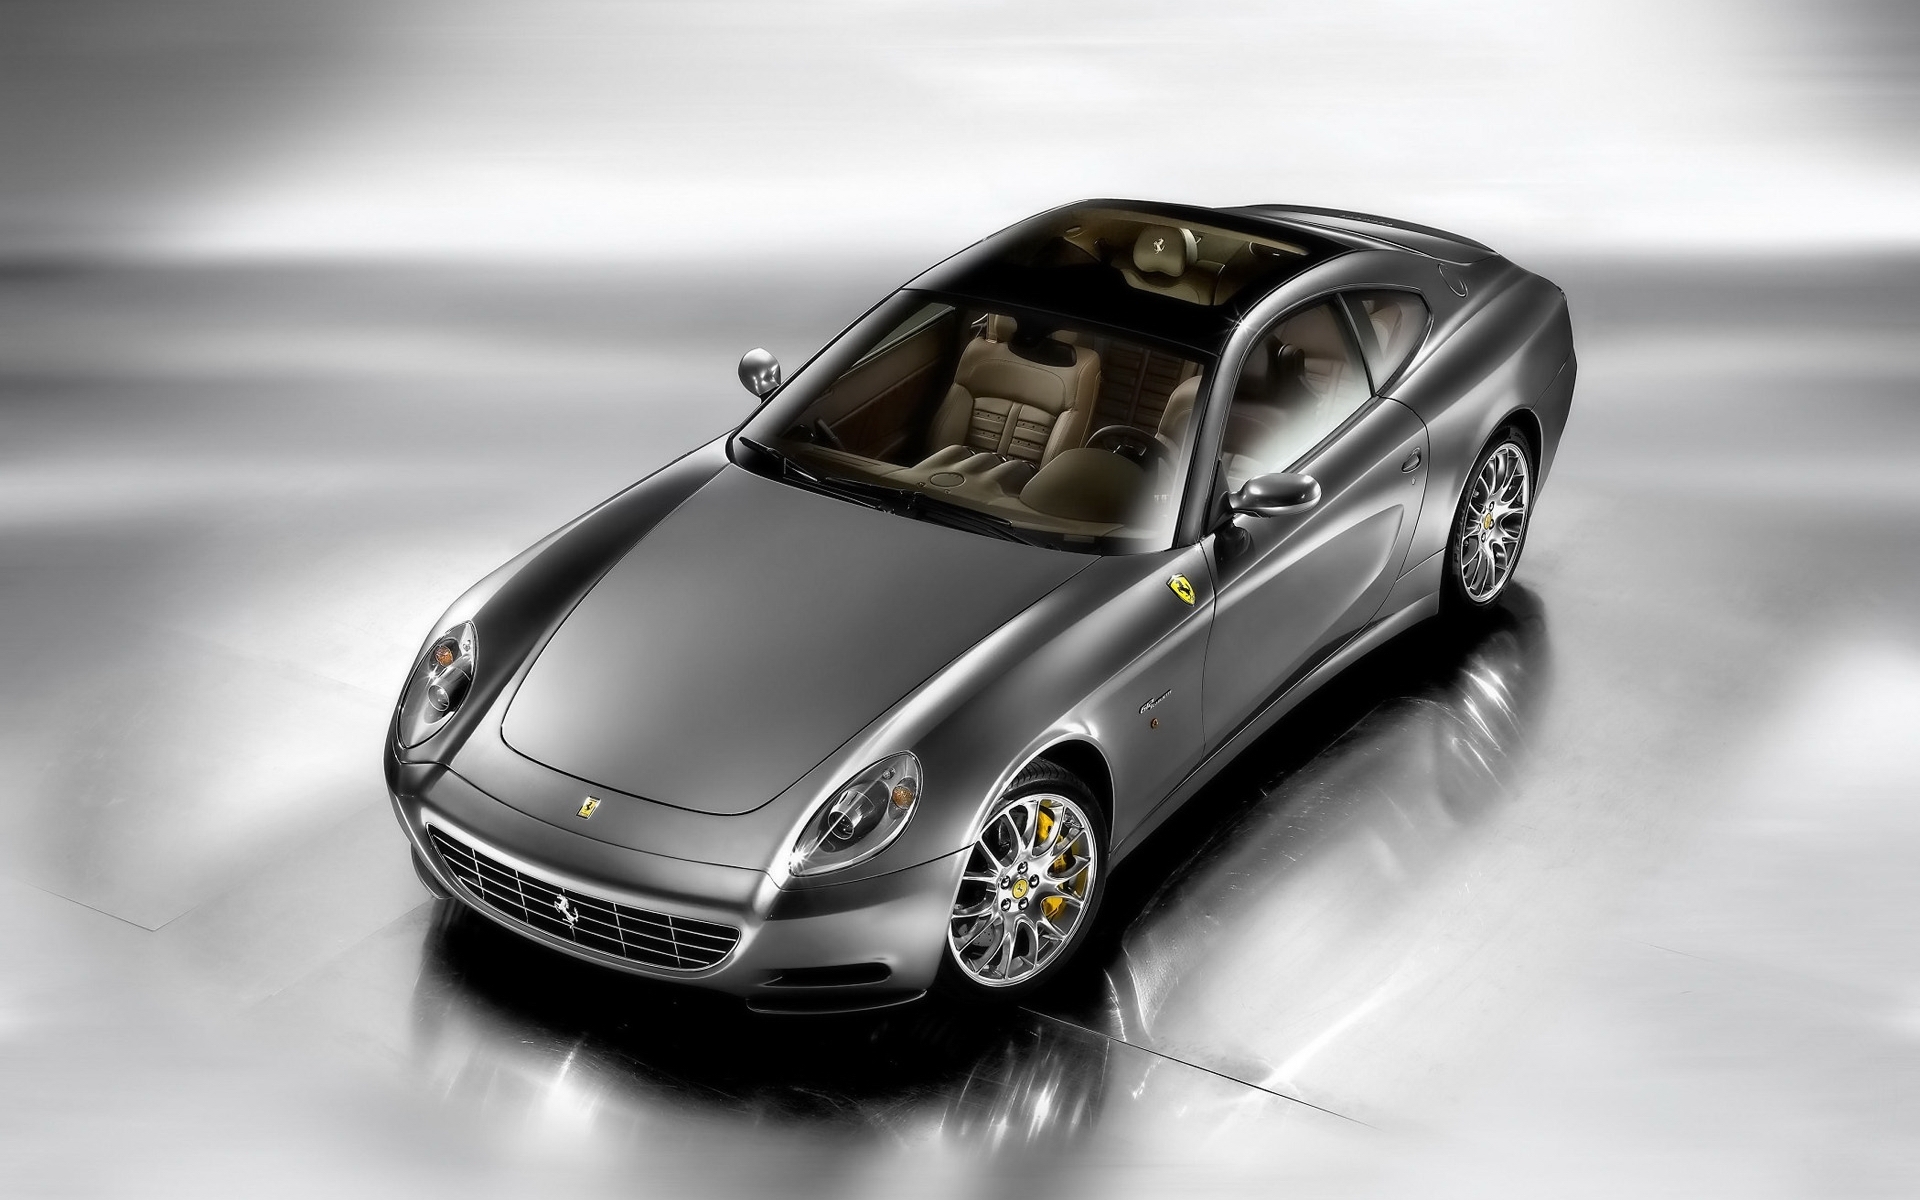 Download mobile wallpaper Transport, Ferrari, Auto for free.